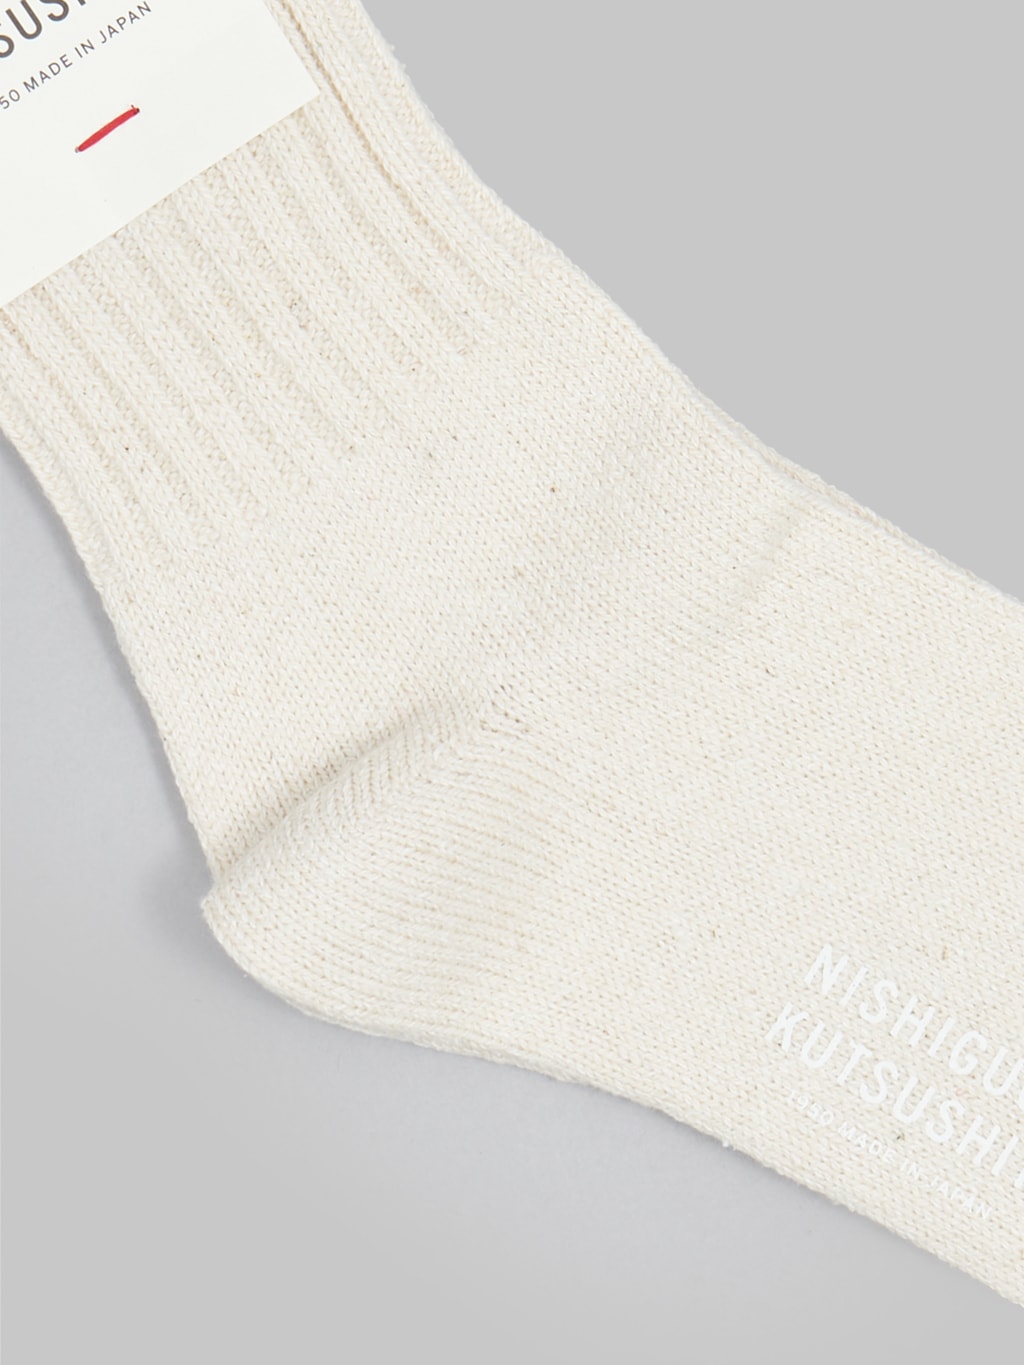 nishiguchi kutsushita silk cotton socks marshmallow cream heel